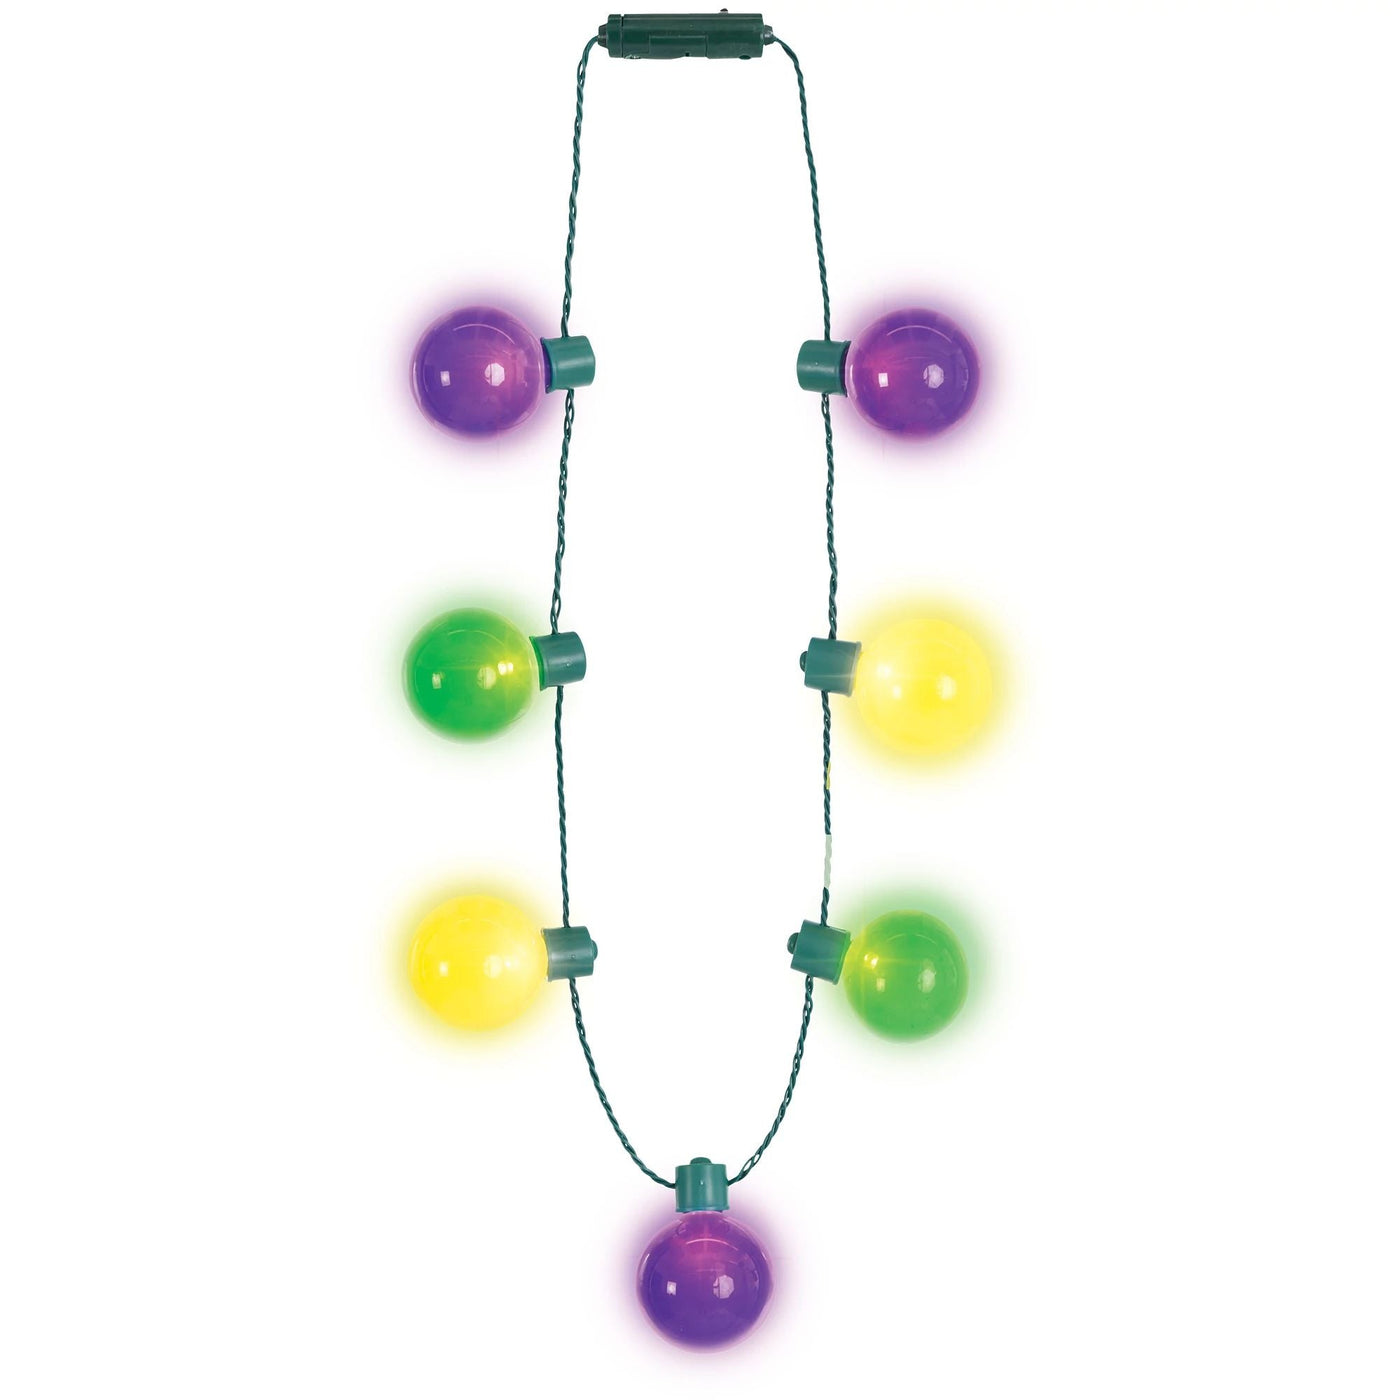 Mardi Gras Oversize Light Up Bulb Necklace - JJ's Party House